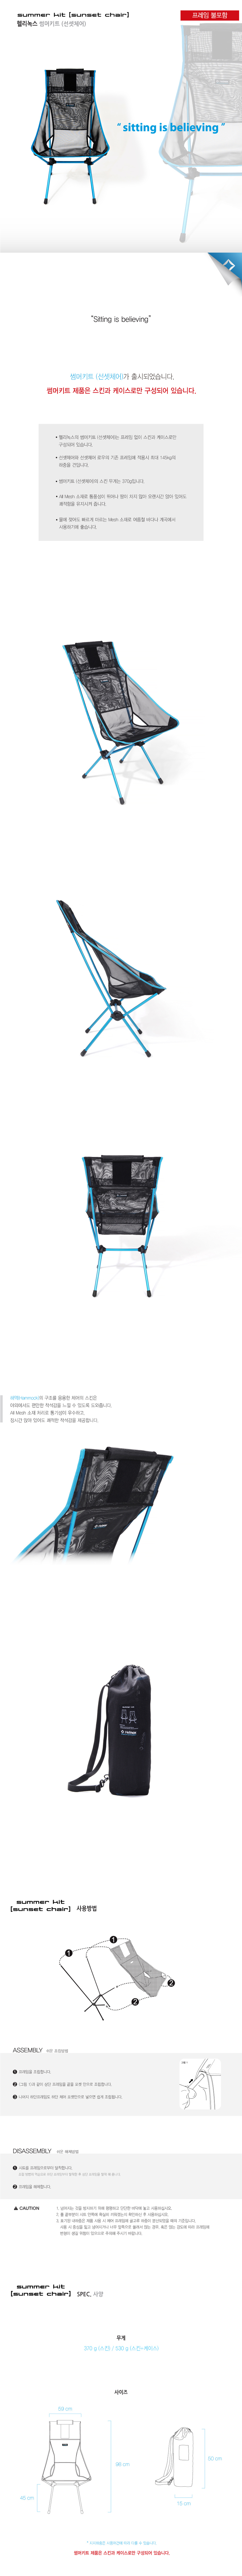 20170102-Summer-Kit-Sunset-Chair-.jpg